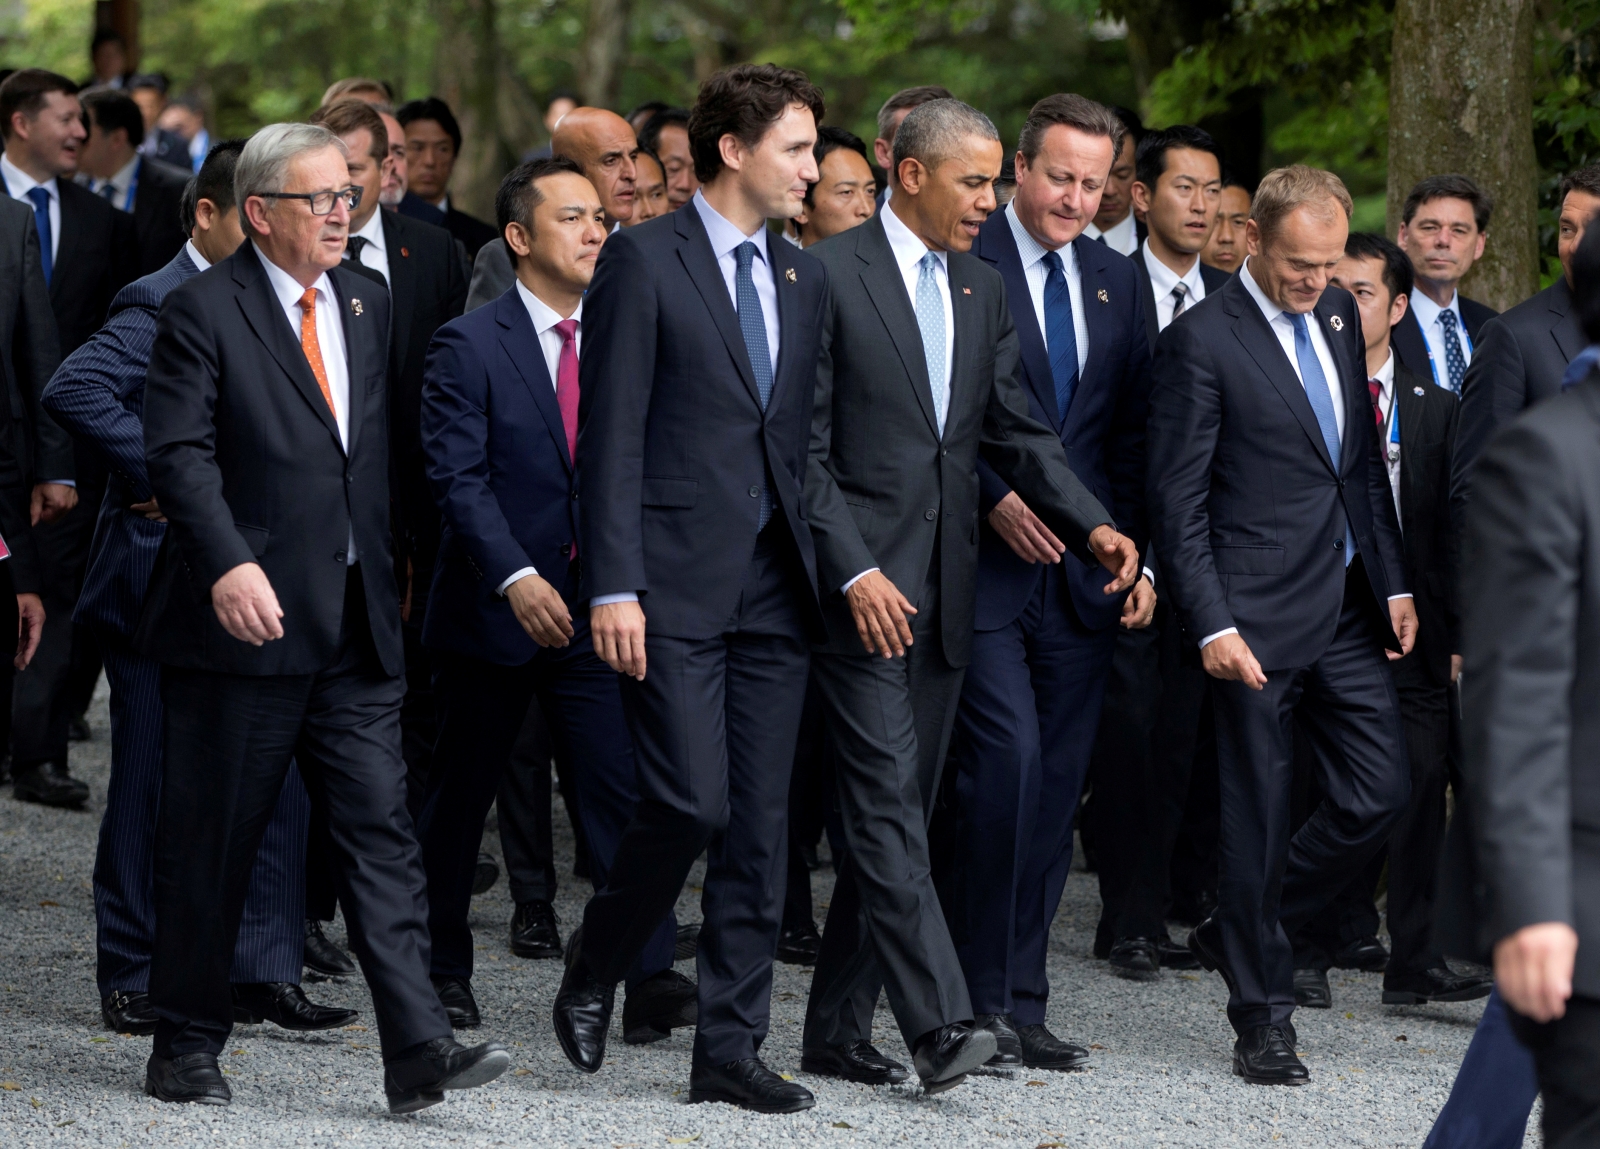 Группа большой семерки. G7 Summit. G7 большая семерка. Саммит g7 в Японии. Summit g7 2014.